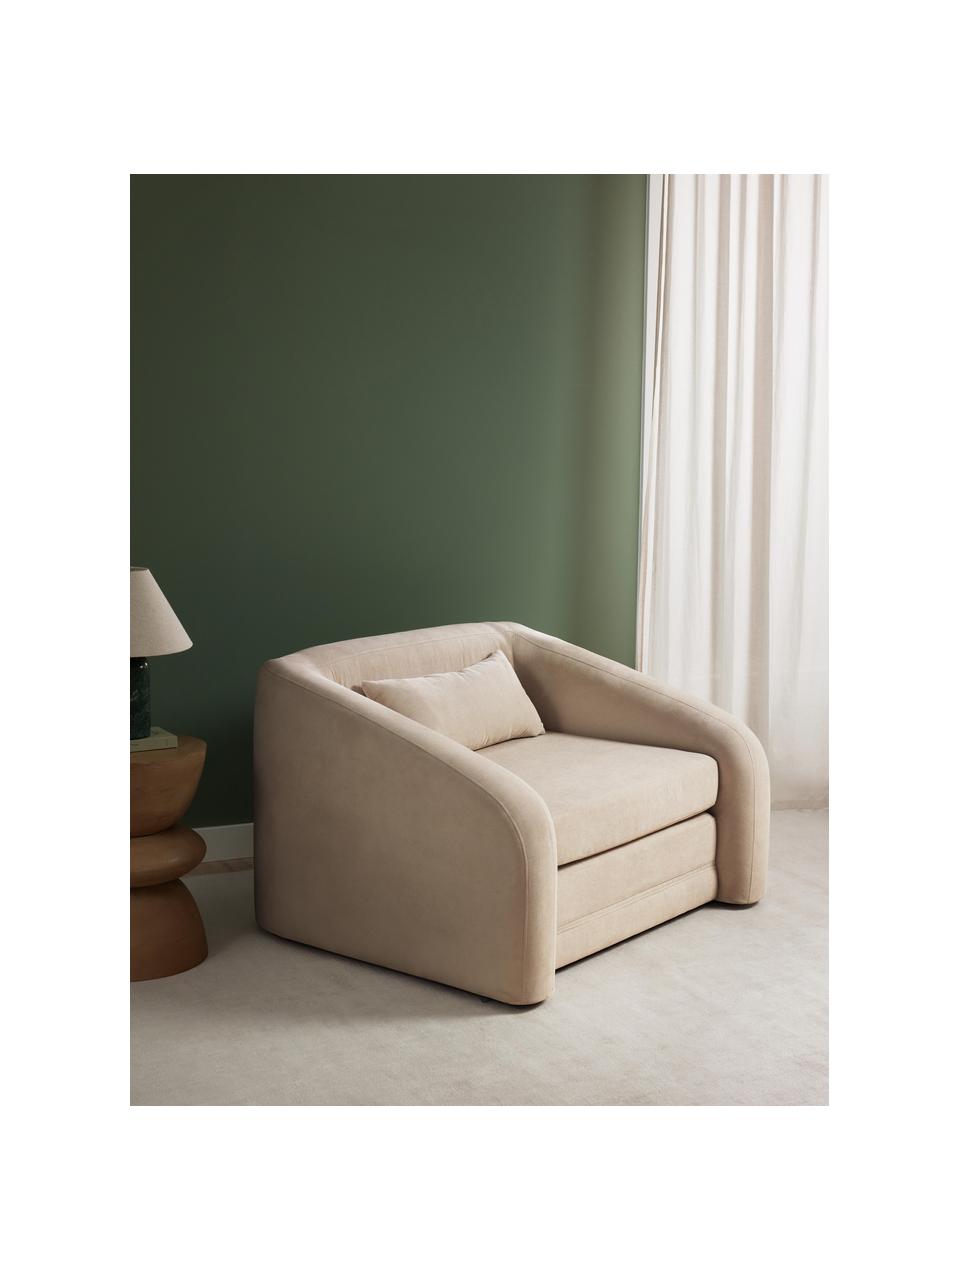 Fotel rozkładany Eliot, Tapicerka: 88% poliester, 12% nylon , Nogi: tworzywo sztuczne, Beżowa tkanina, S 100 x G 94 cm